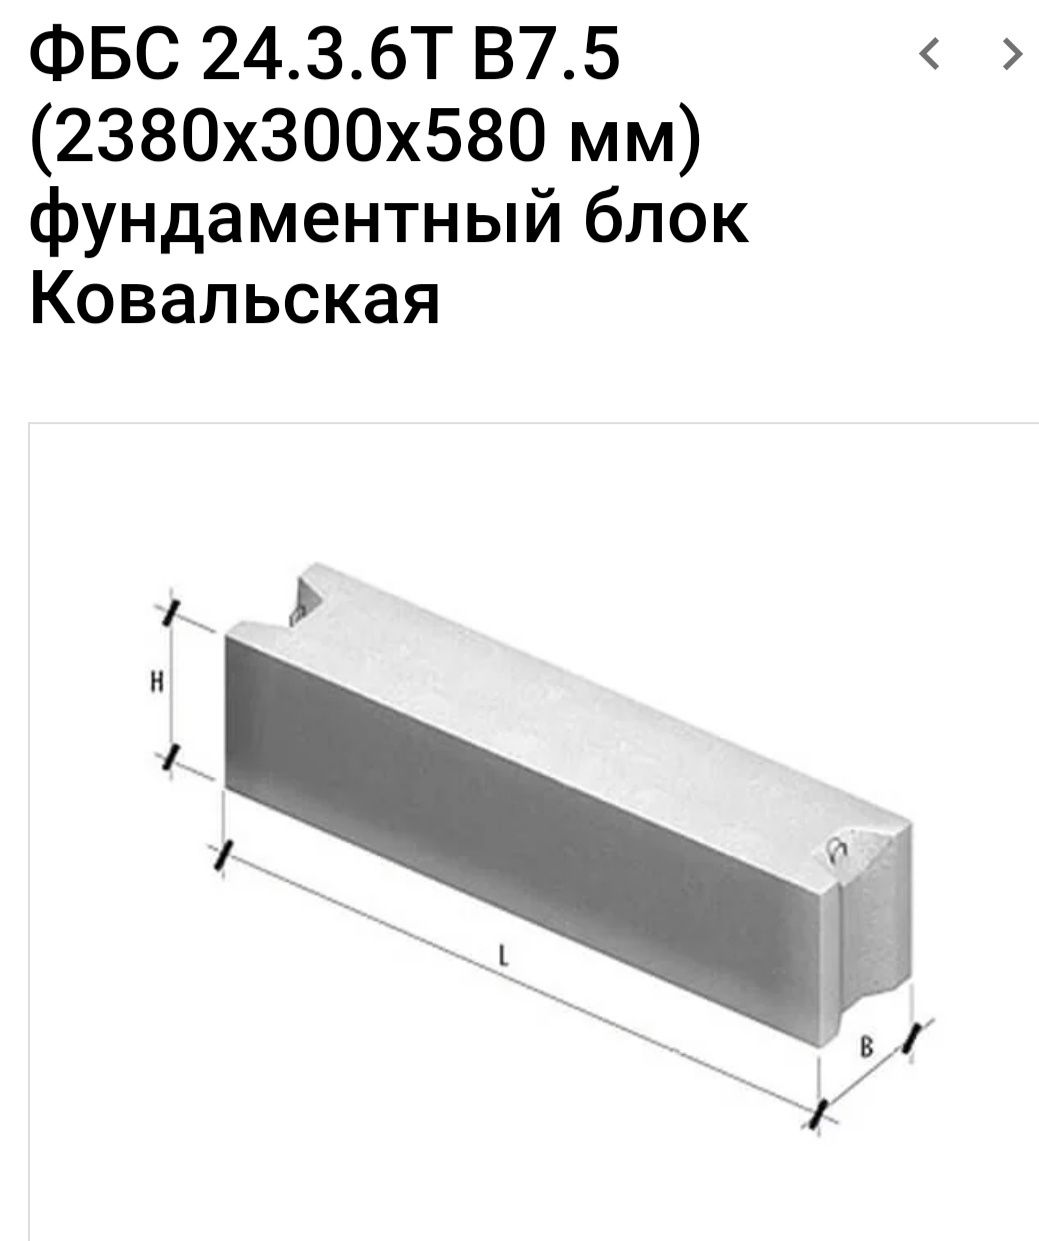 Продам фундаментные блоки ФБС 24.3.6Т B7.5 (2380х300х580 мм)